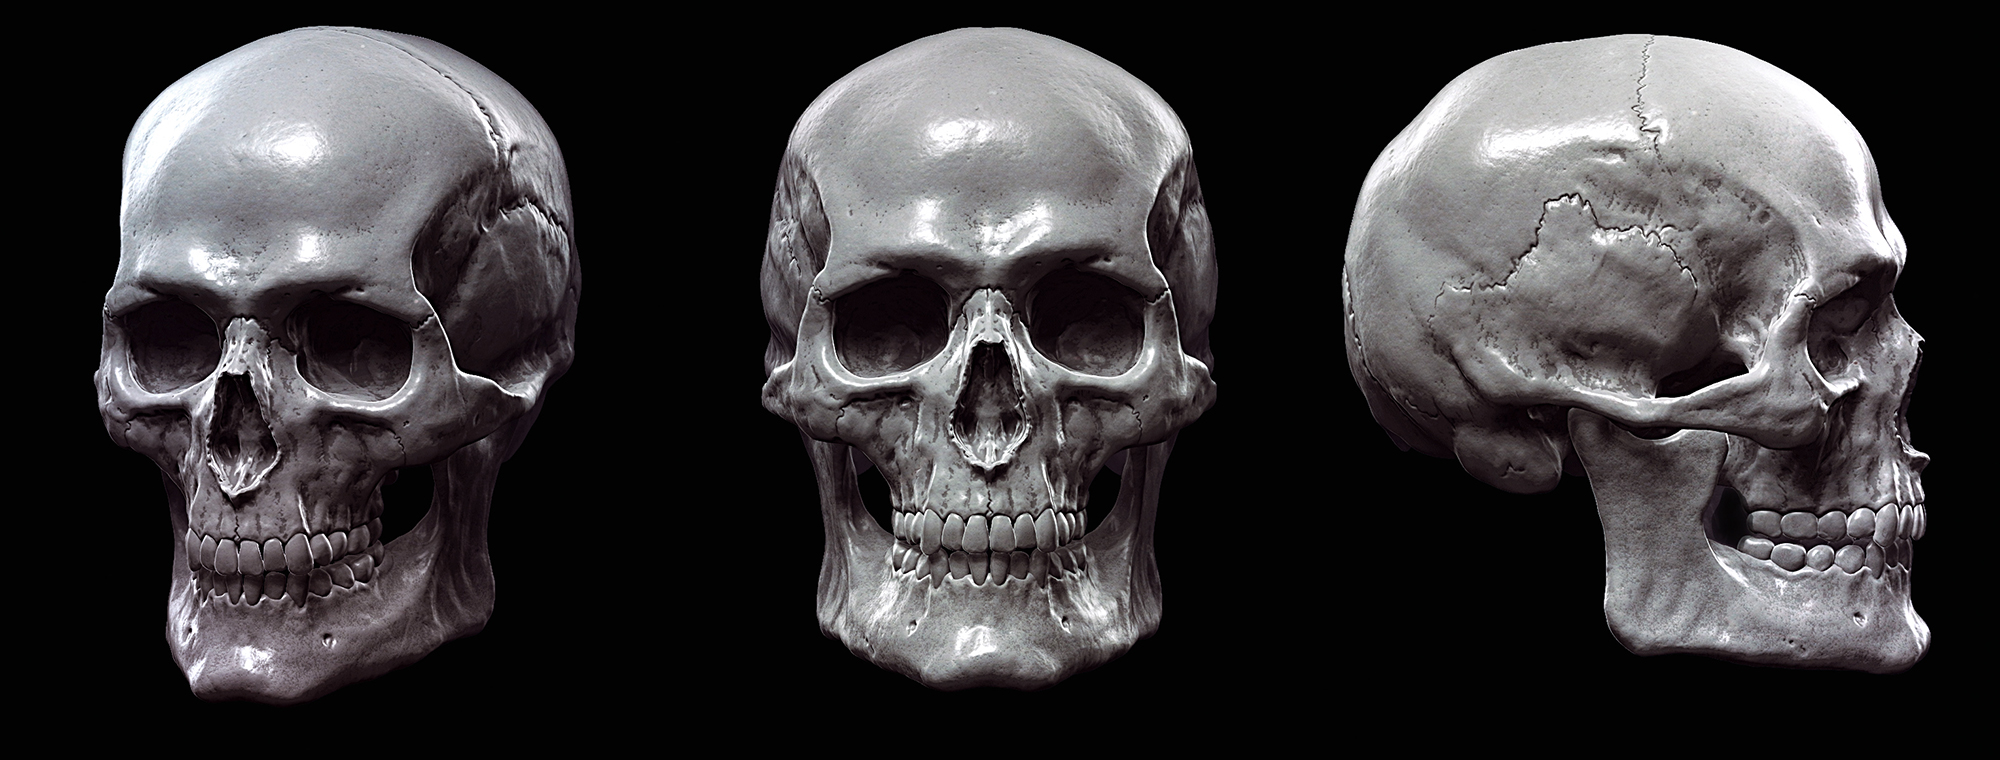 skull_sculpting.jpg